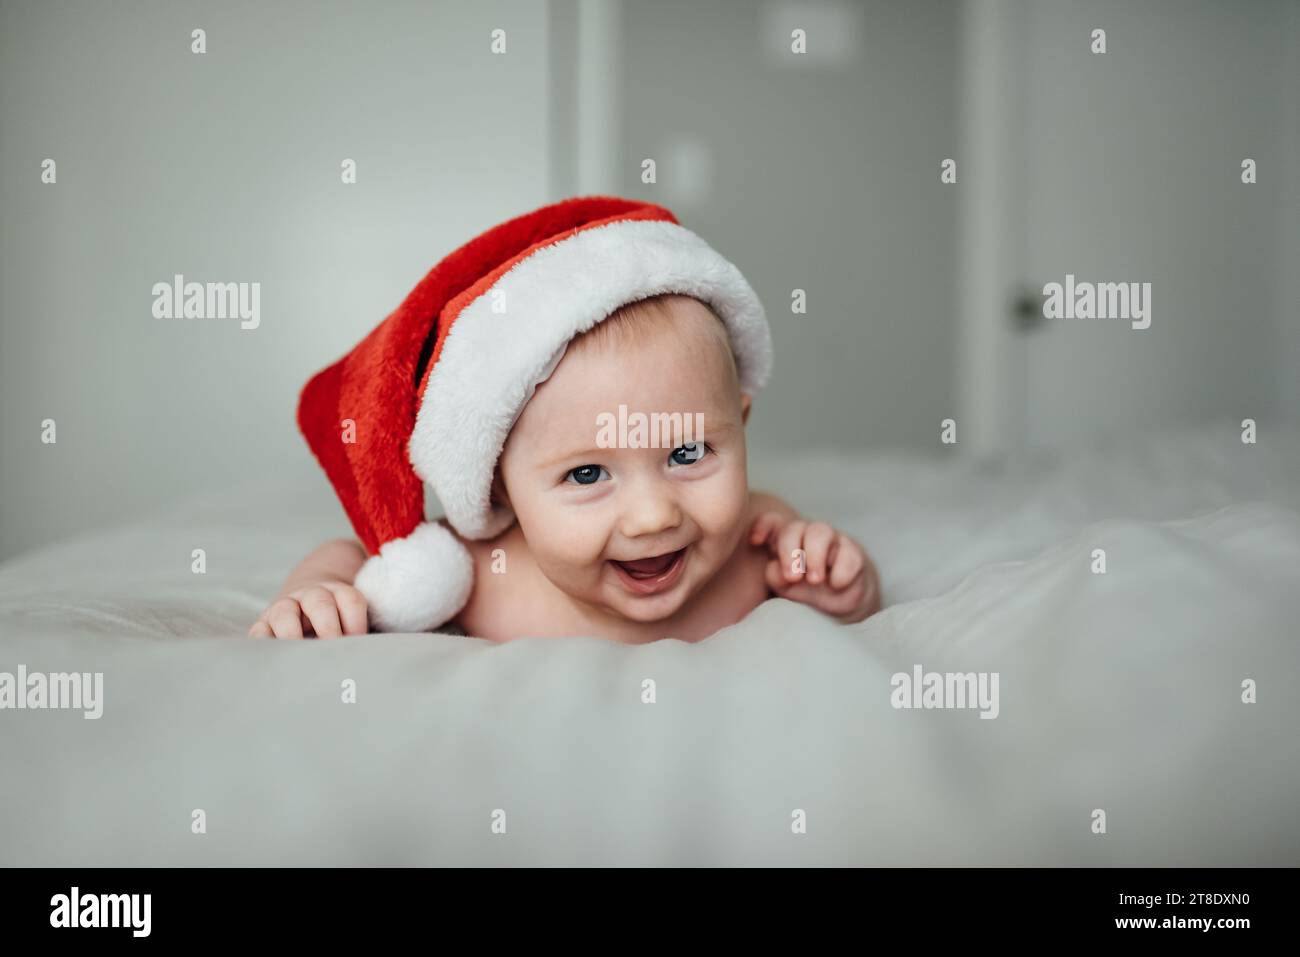 Nahaufnahme eines kleinen Jungen, der Weihnachtsmann-Hut trägt, während er lächelt Stockfoto